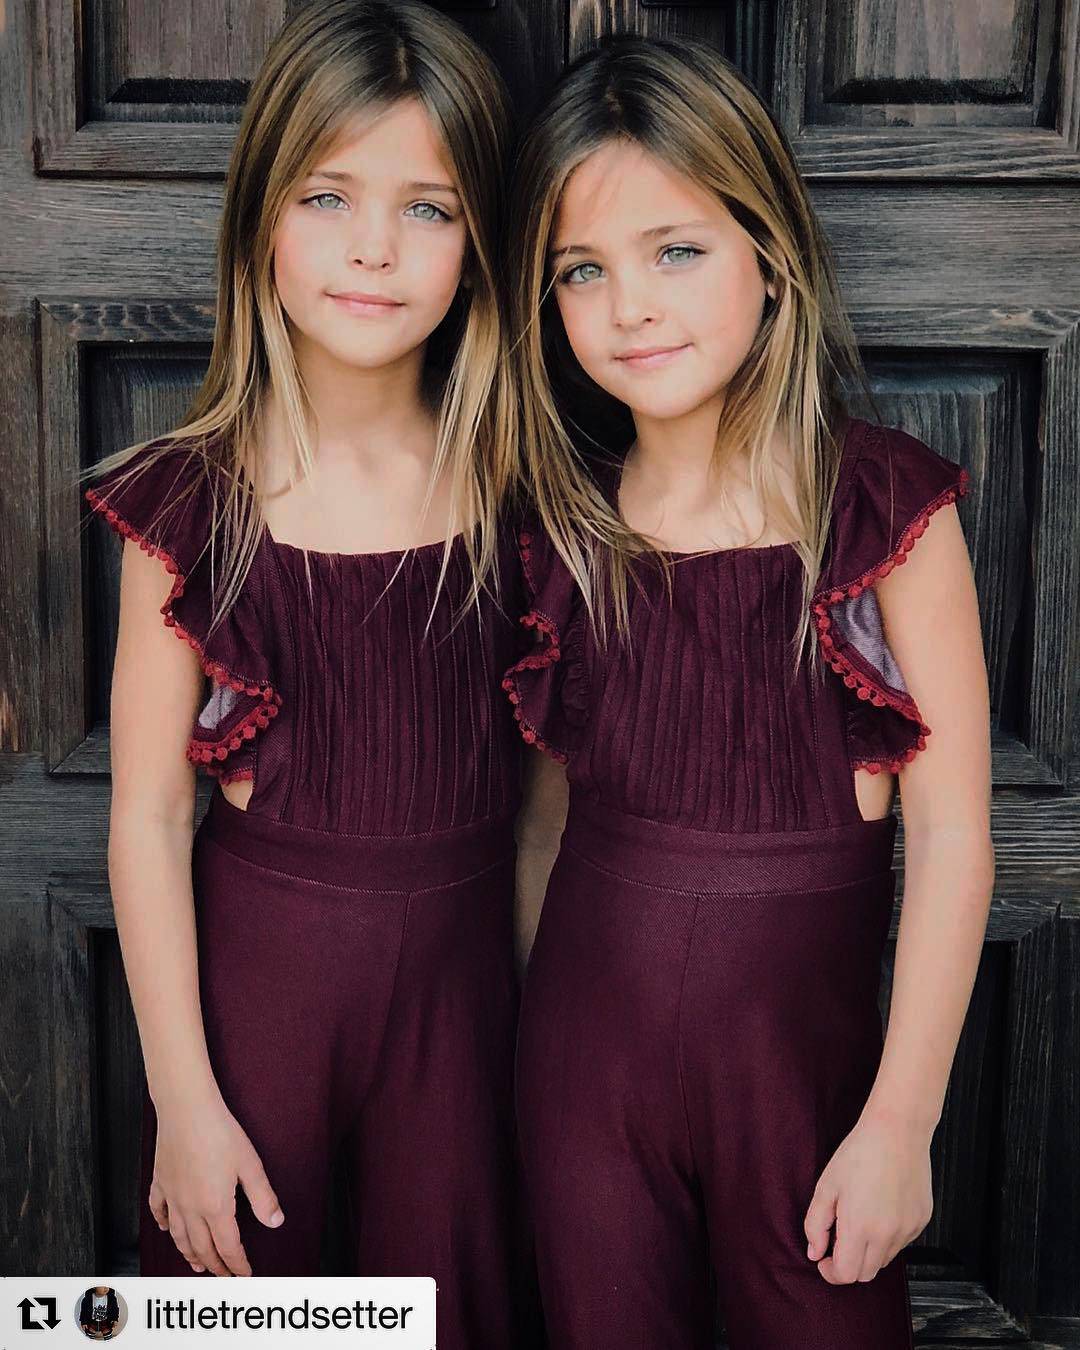 due gemelle di 7 anni sono considerate le bambine più belle del mondo